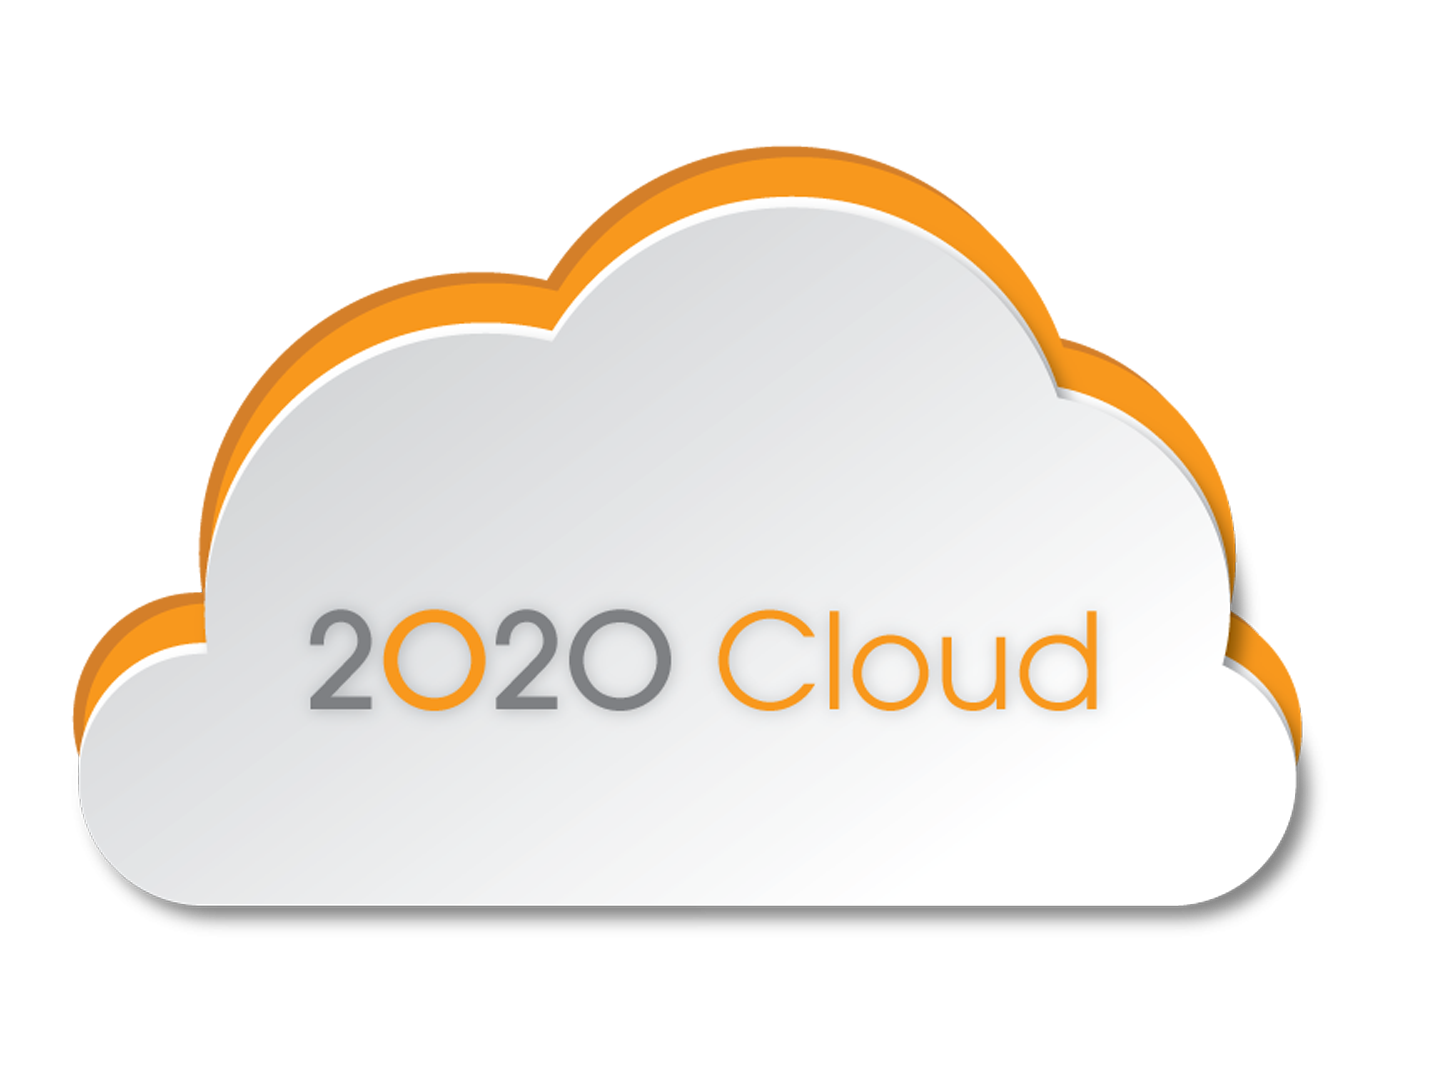 2020 Cloud